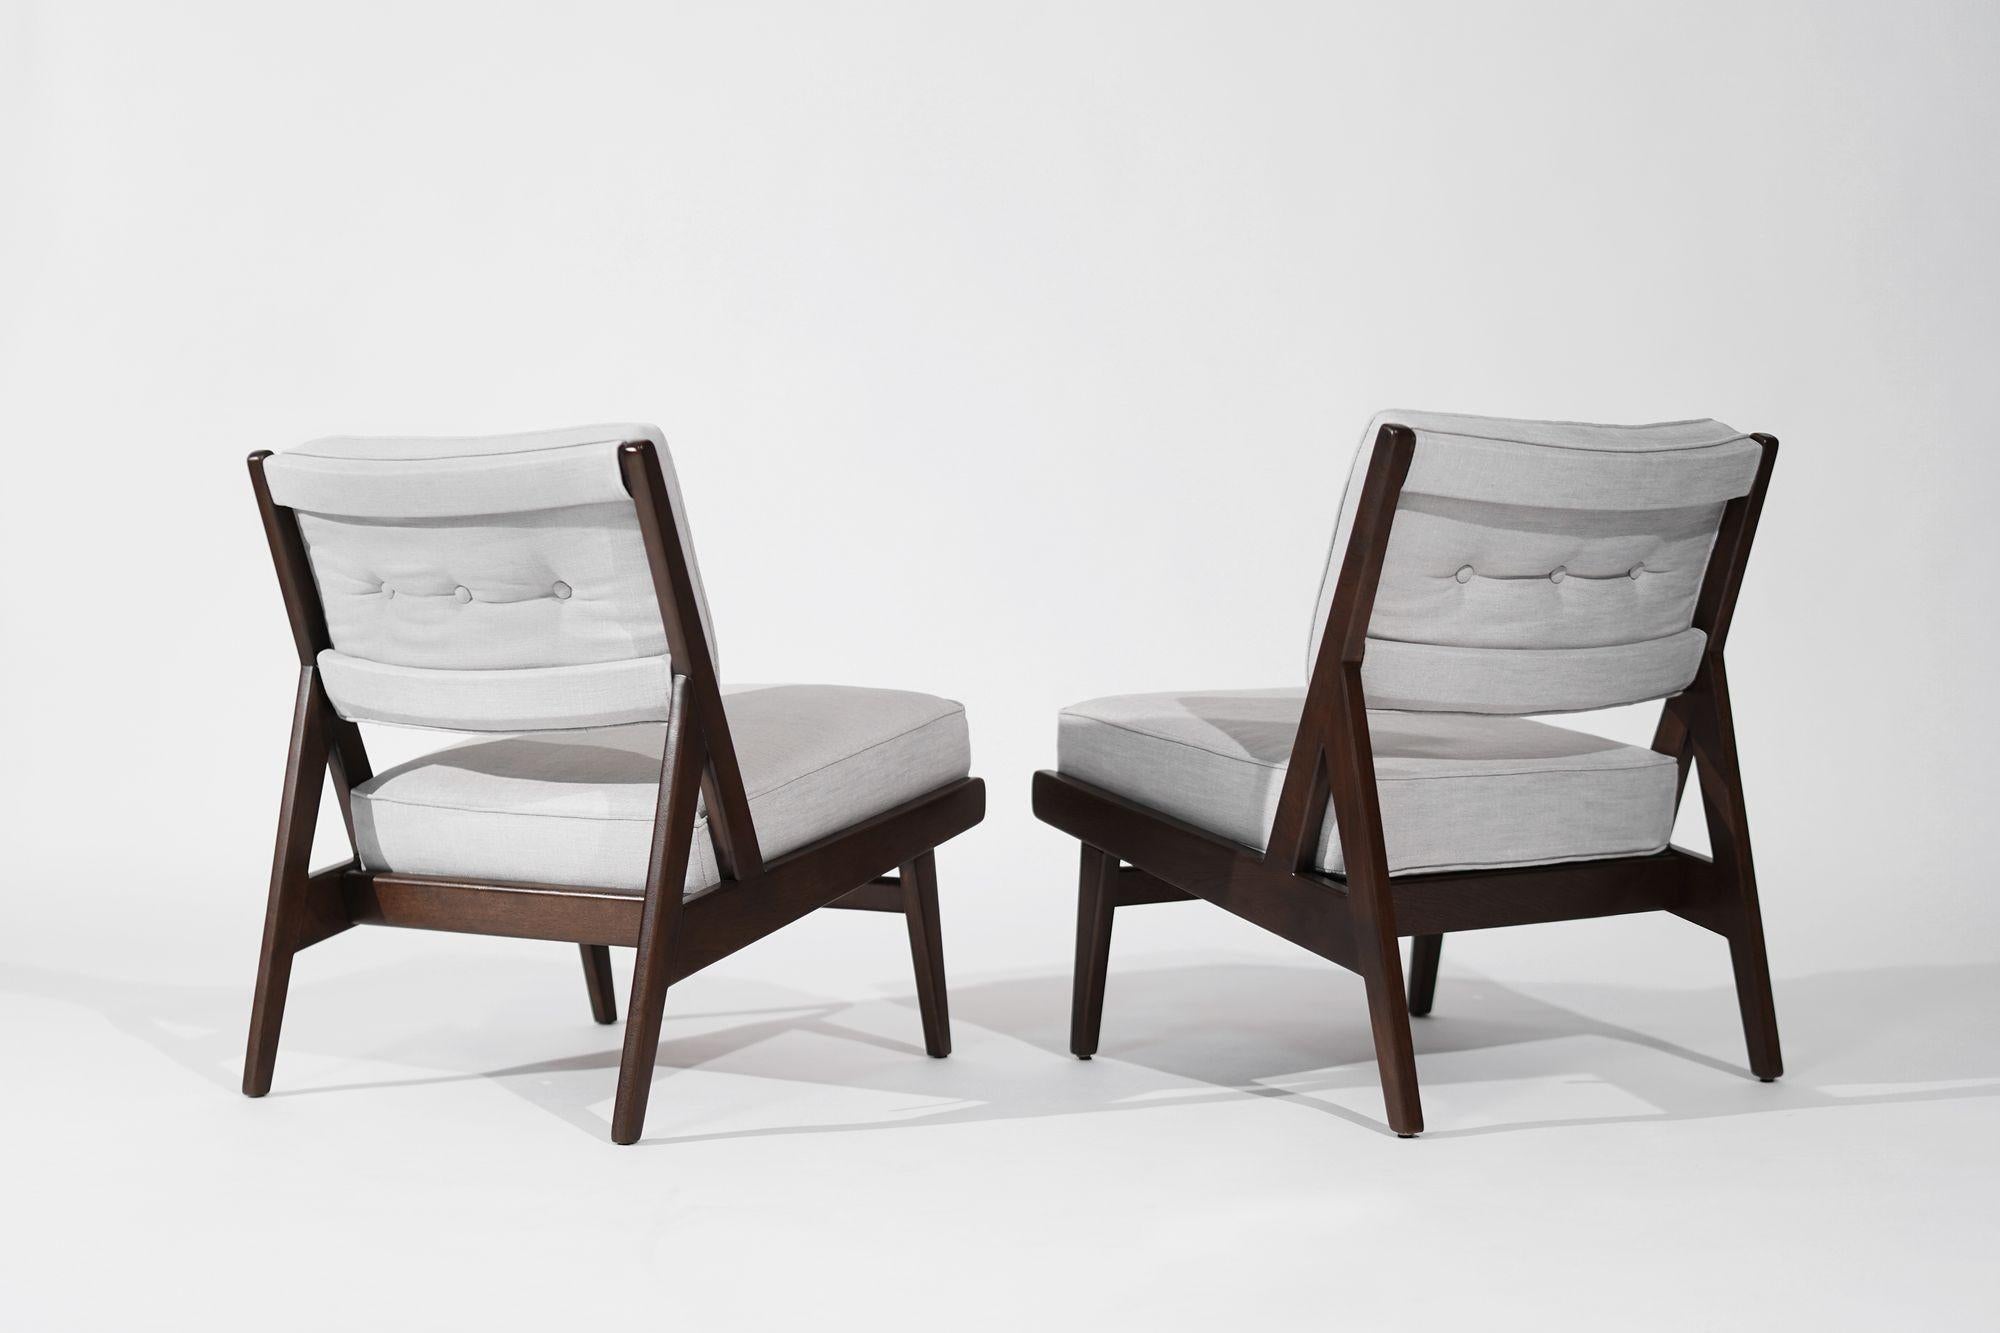 Seltene Sessel ohne Armlehne von Jens Risom für Risom, Inc., ca. 1950er Jahre (amerikanisch) im Angebot